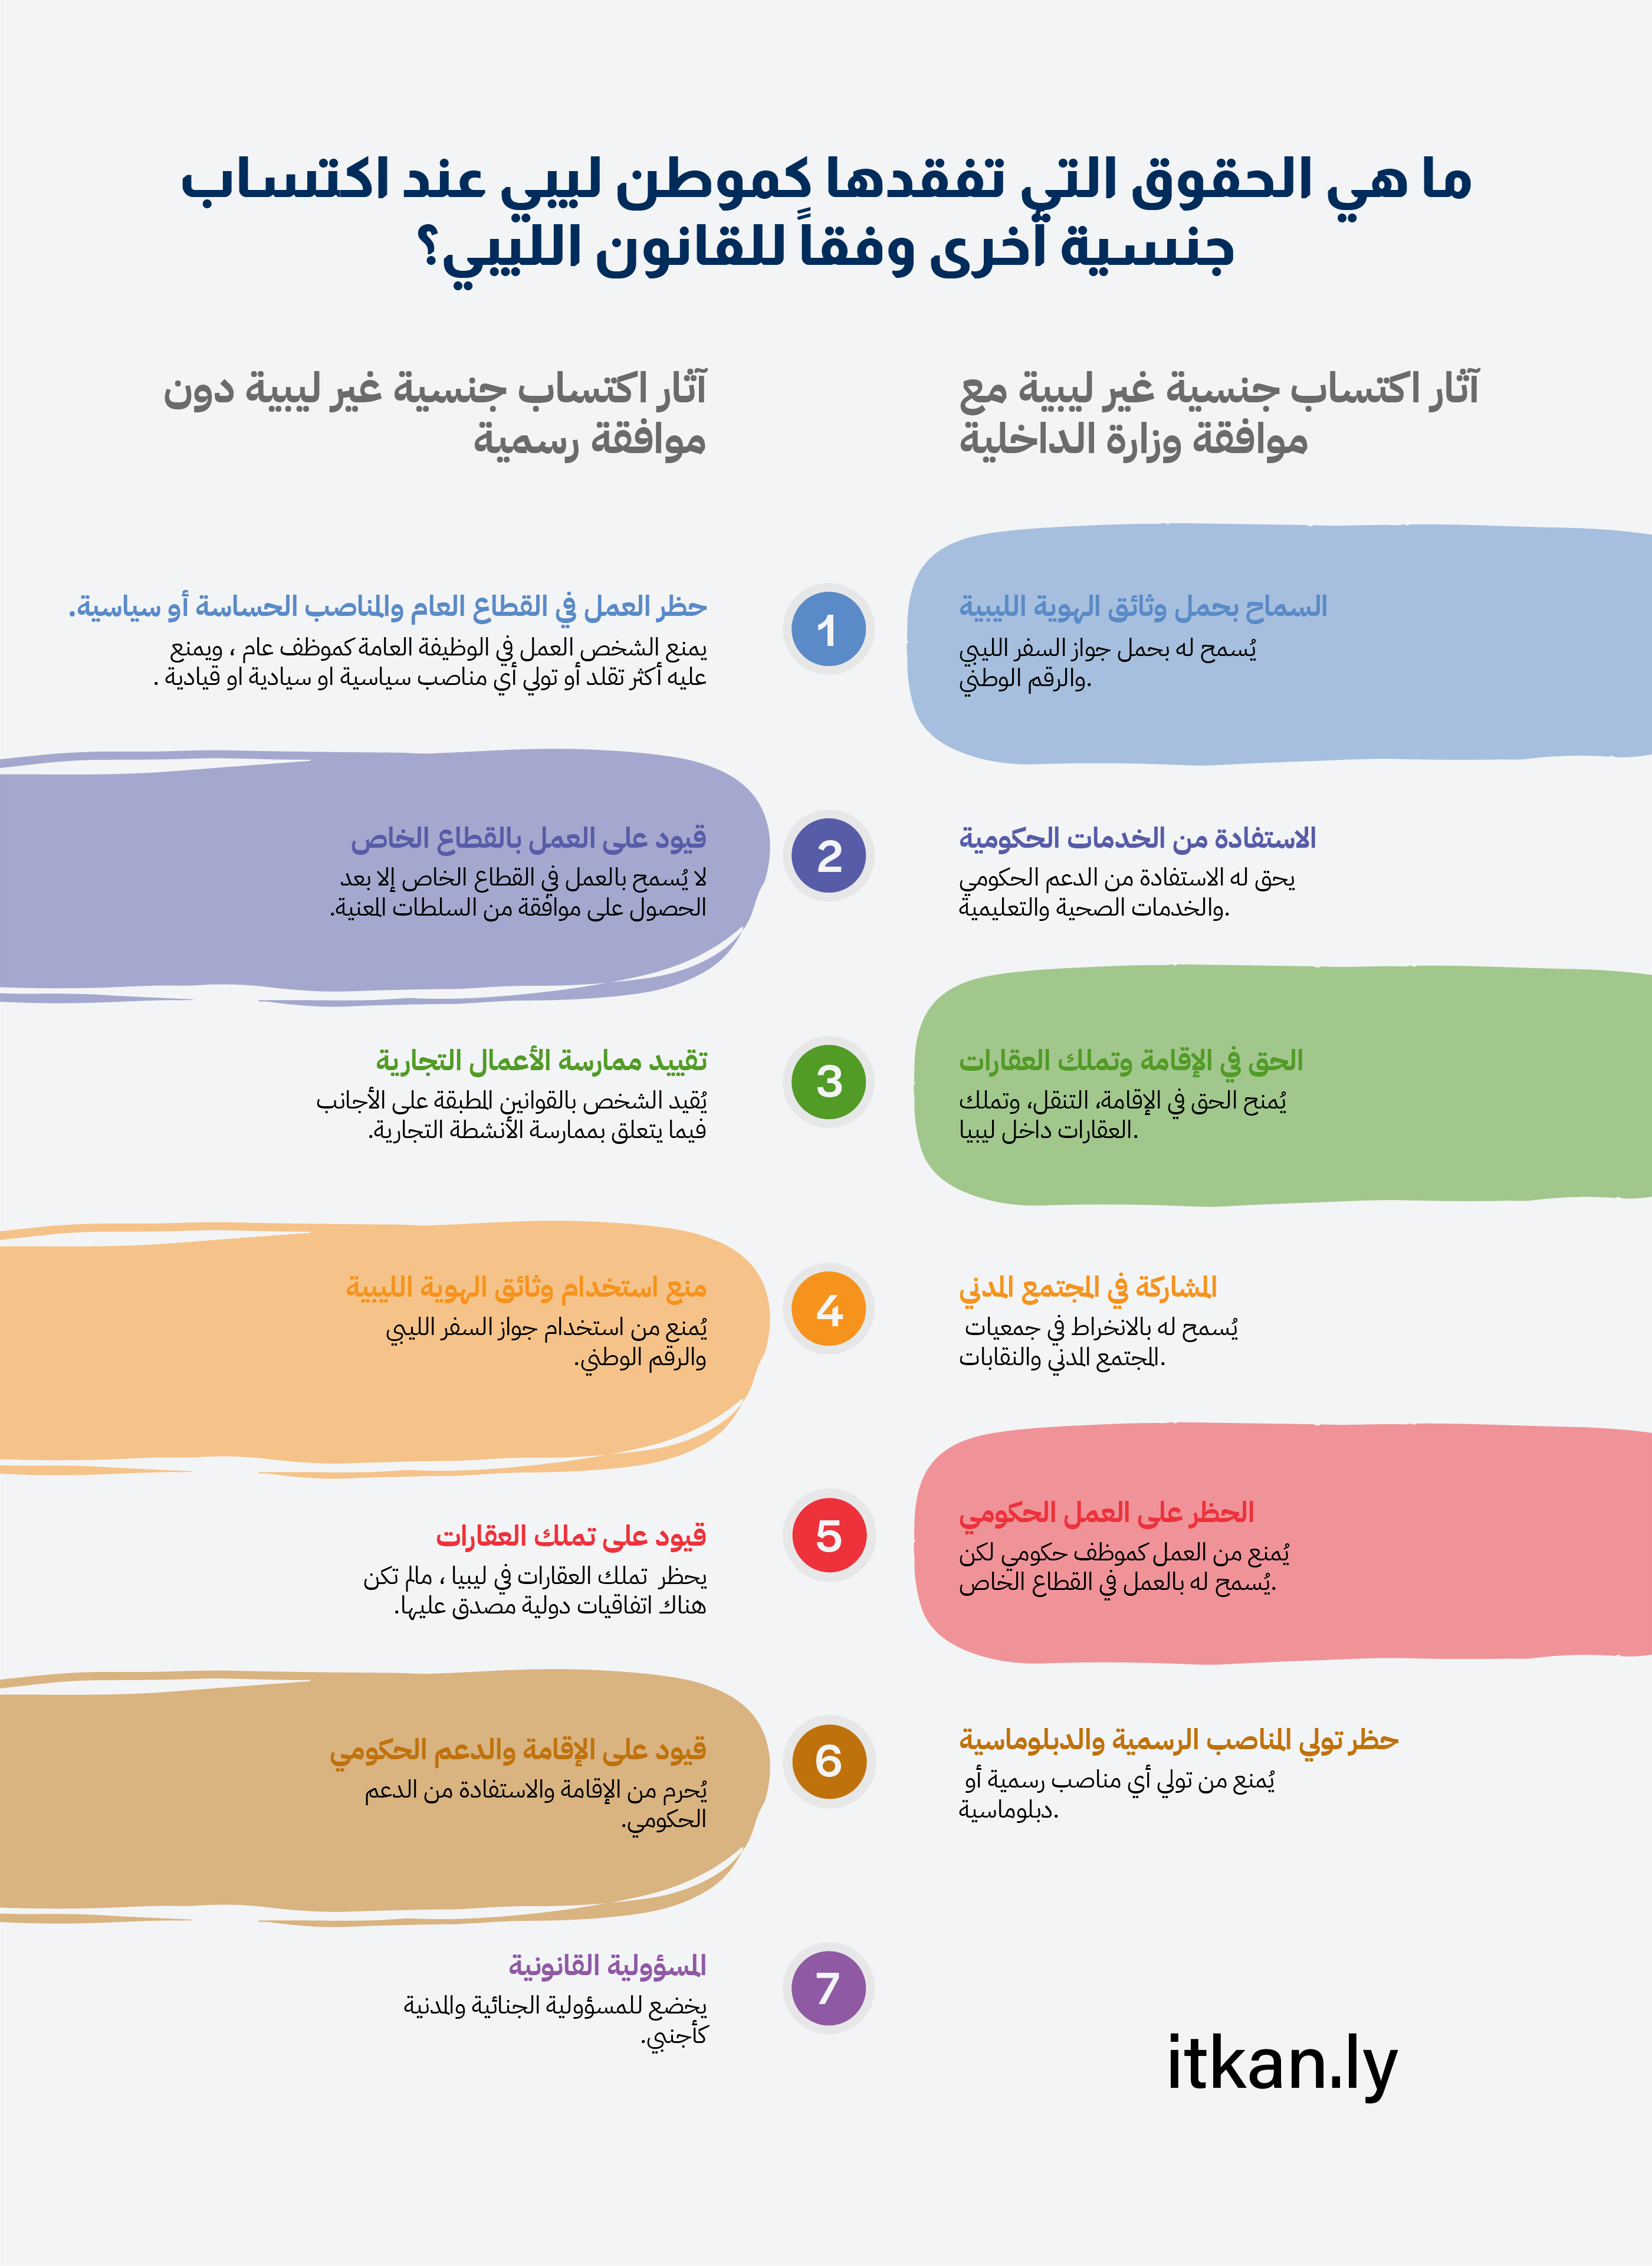 قراءة قانونية في أحكام القانون الليبي بشأن ازدواج الجنسية